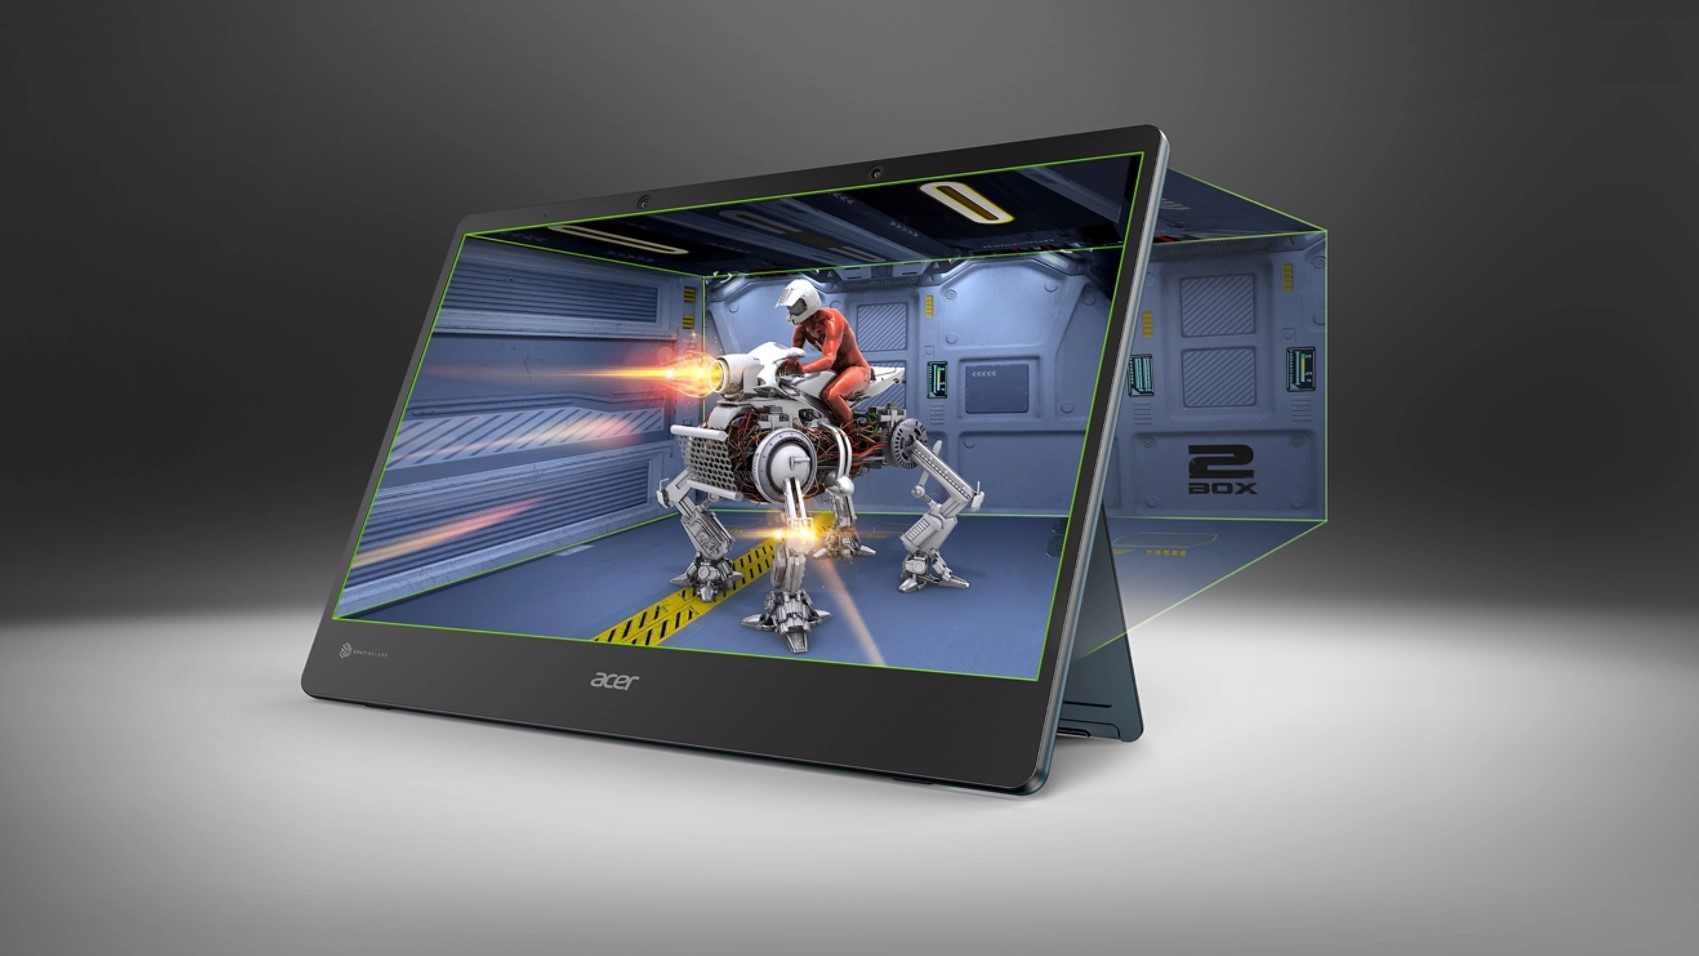 Análisis Acer SpatialLabs View - Llévate el 3D a donde quieras